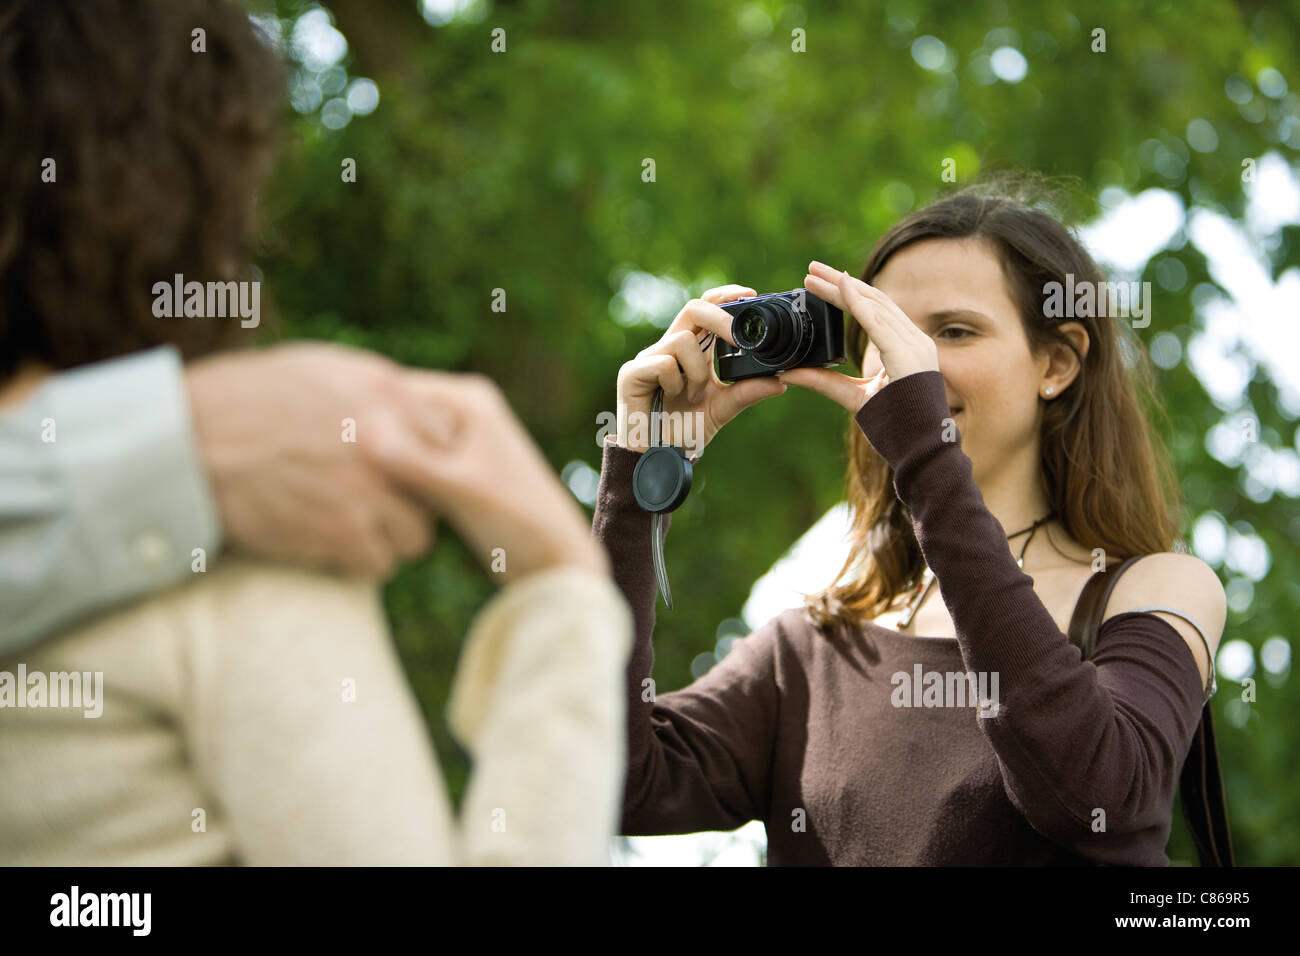 Fotografare la donna giovane con fotocamera digitale, al di sopra della spalla Foto Stock